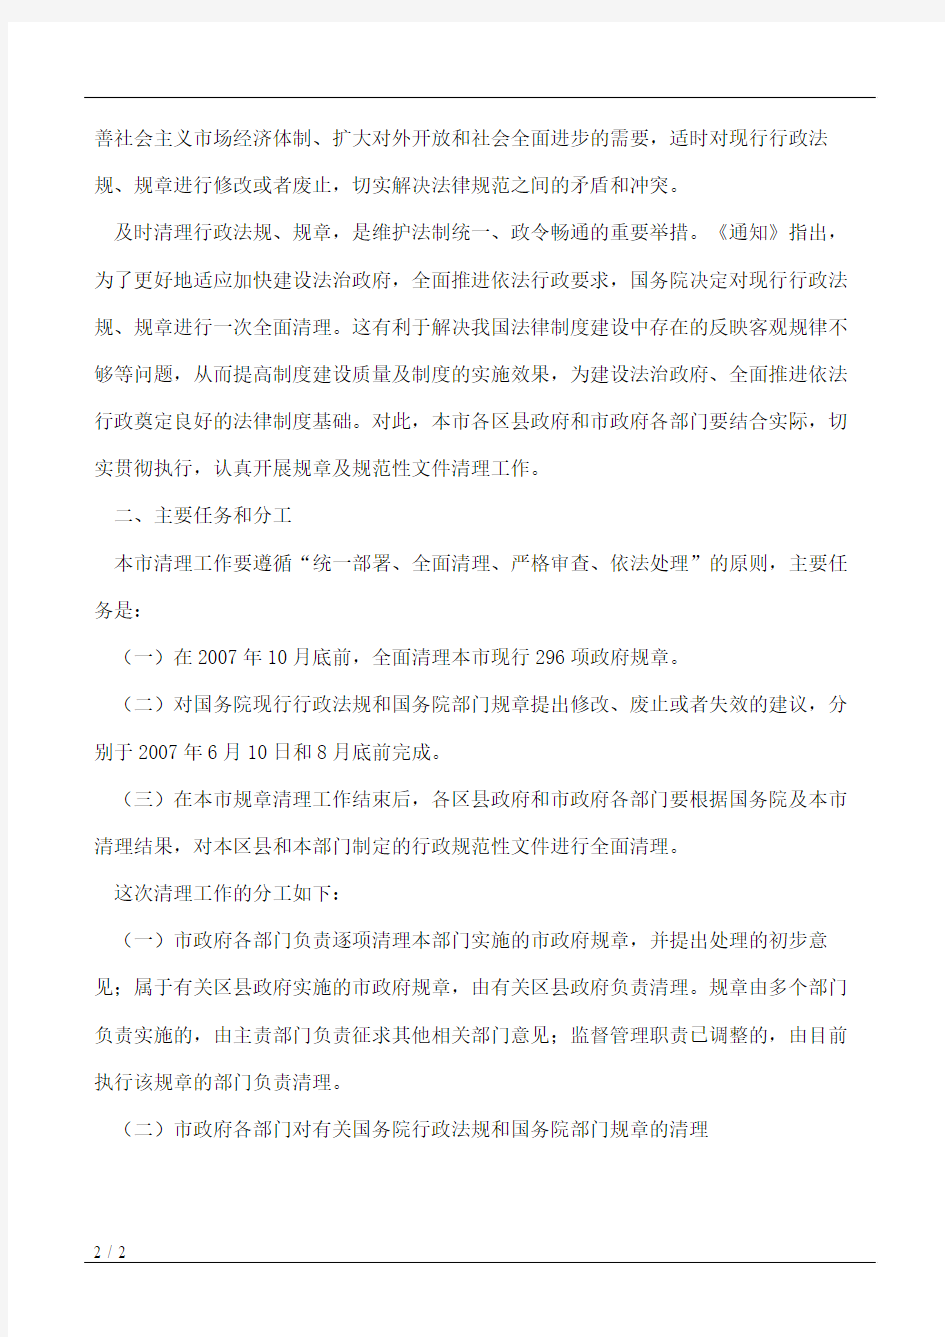 北京市人民政府办公厅关于开展本市规章清理工作的通知